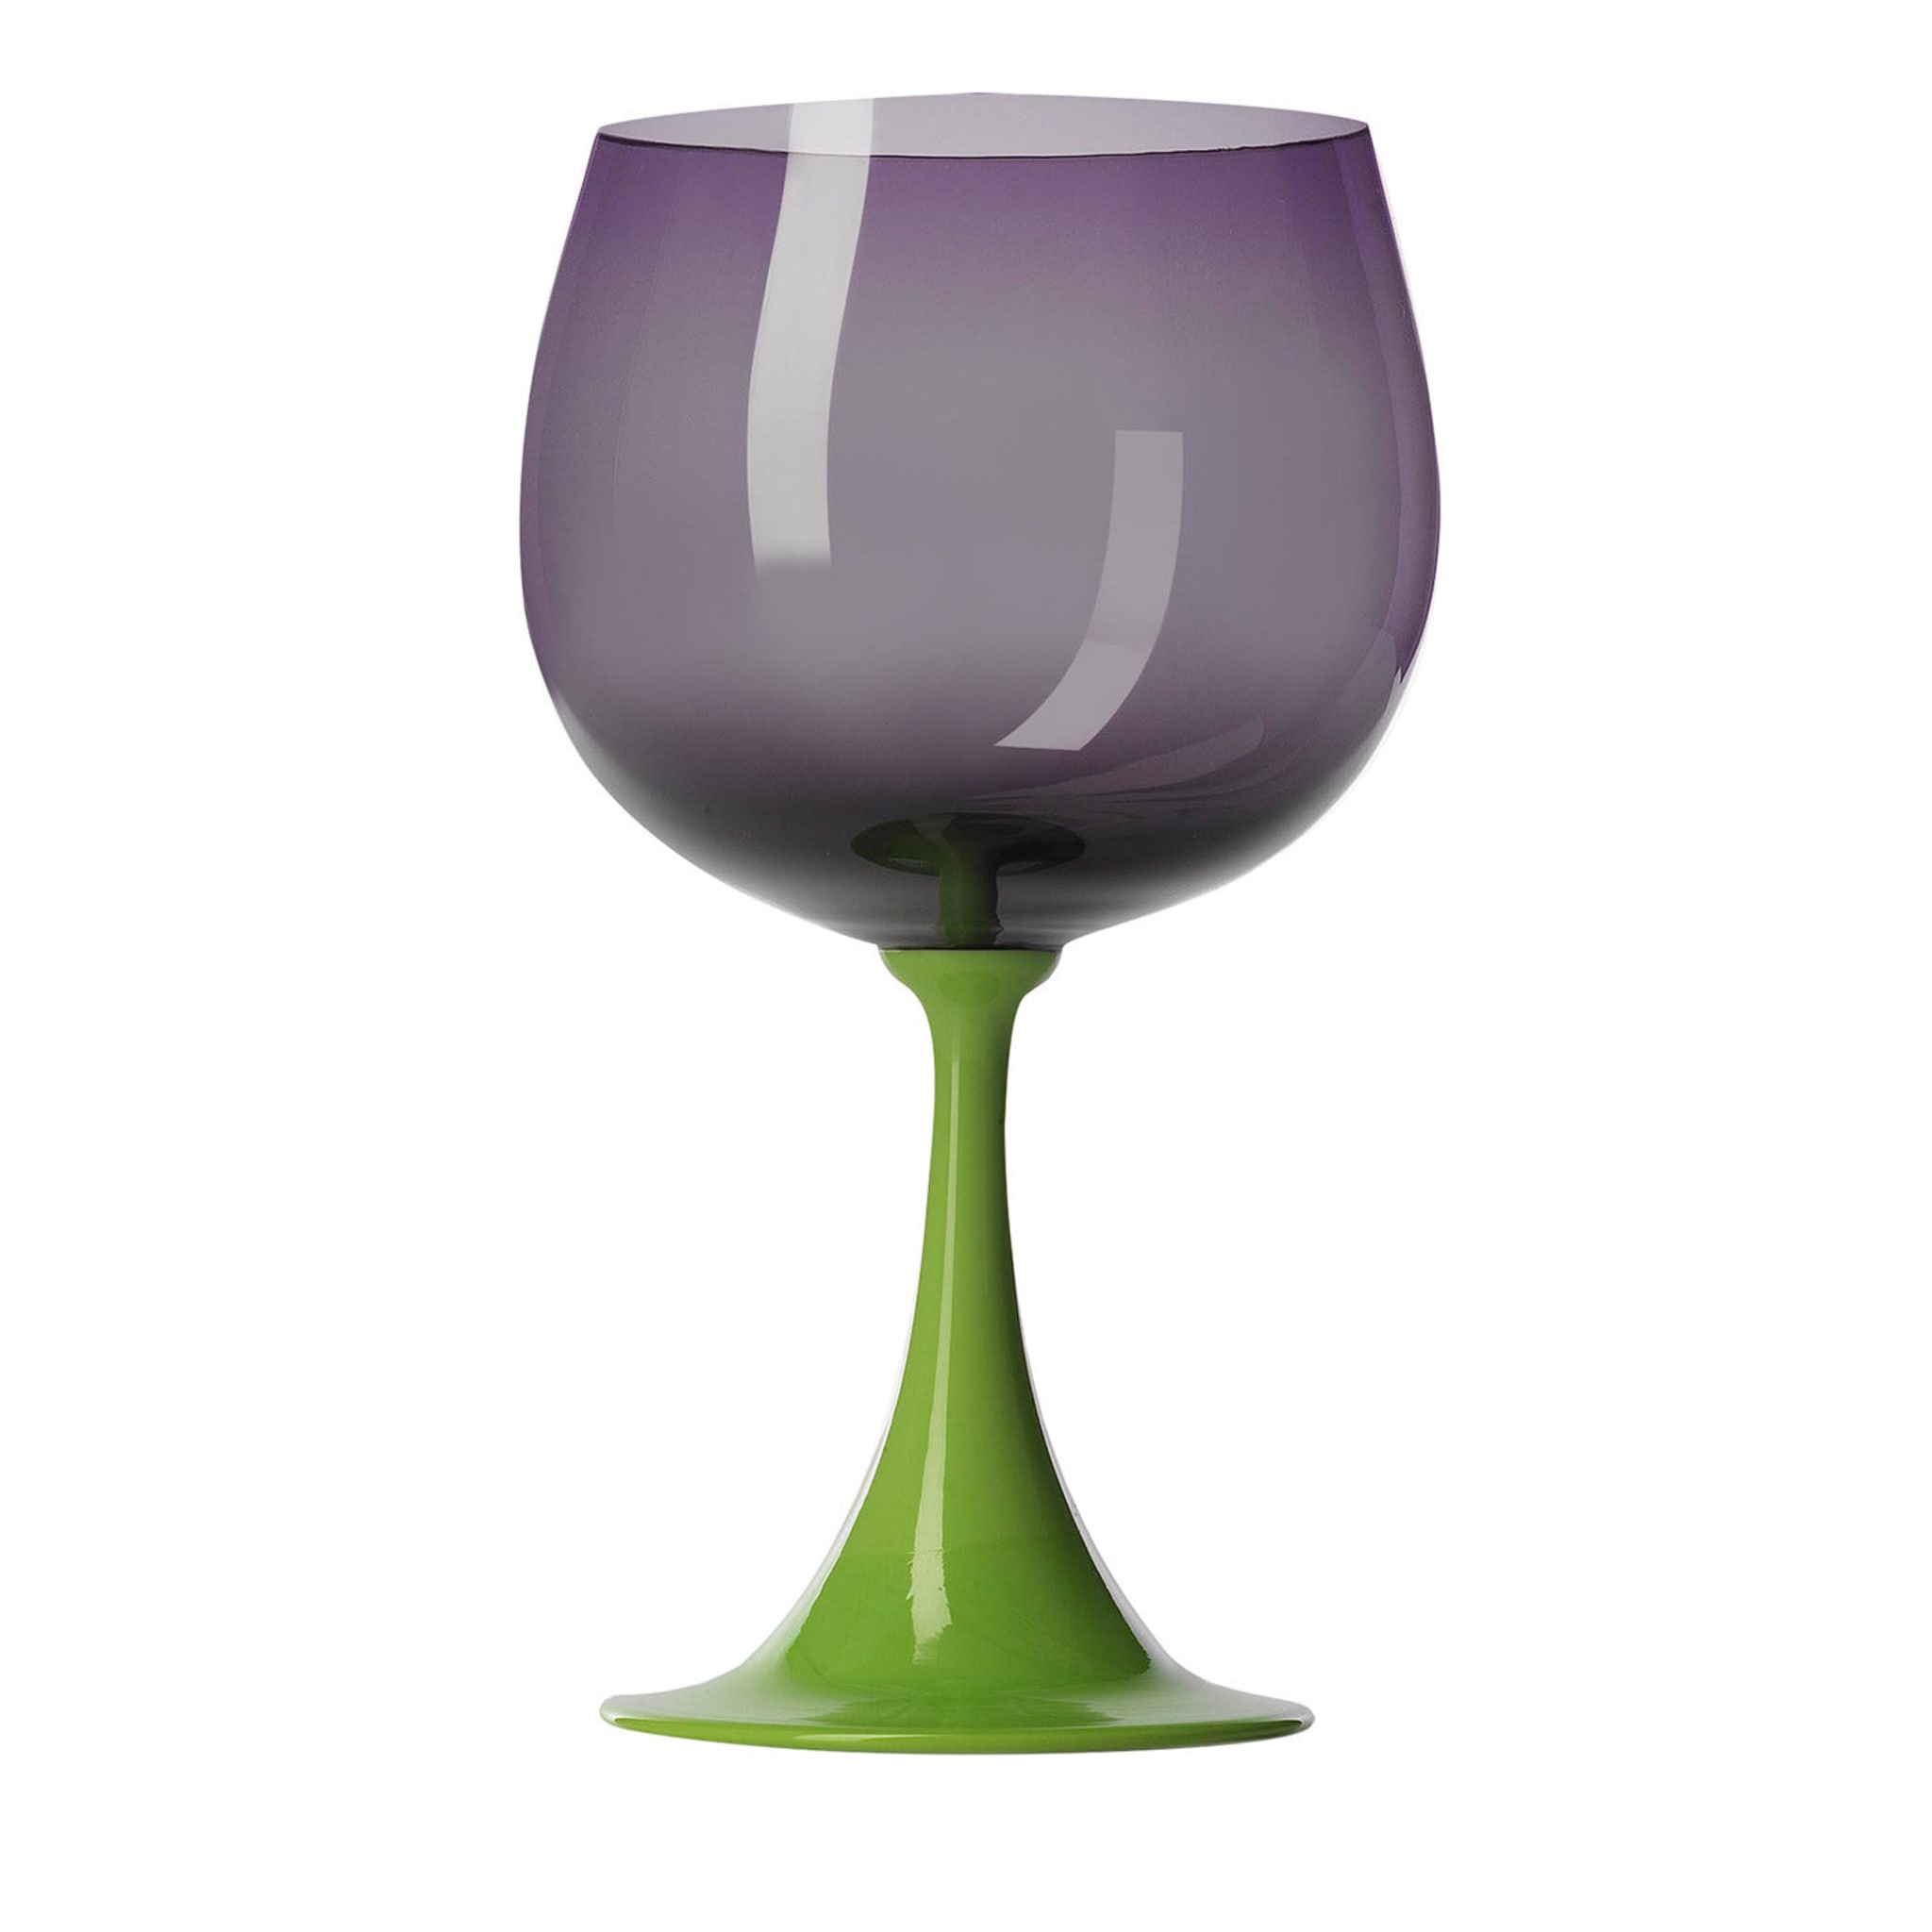 Burlesque Purple Burgundy Glas von NasonMoretti und Stefano Marcato - Hauptansicht